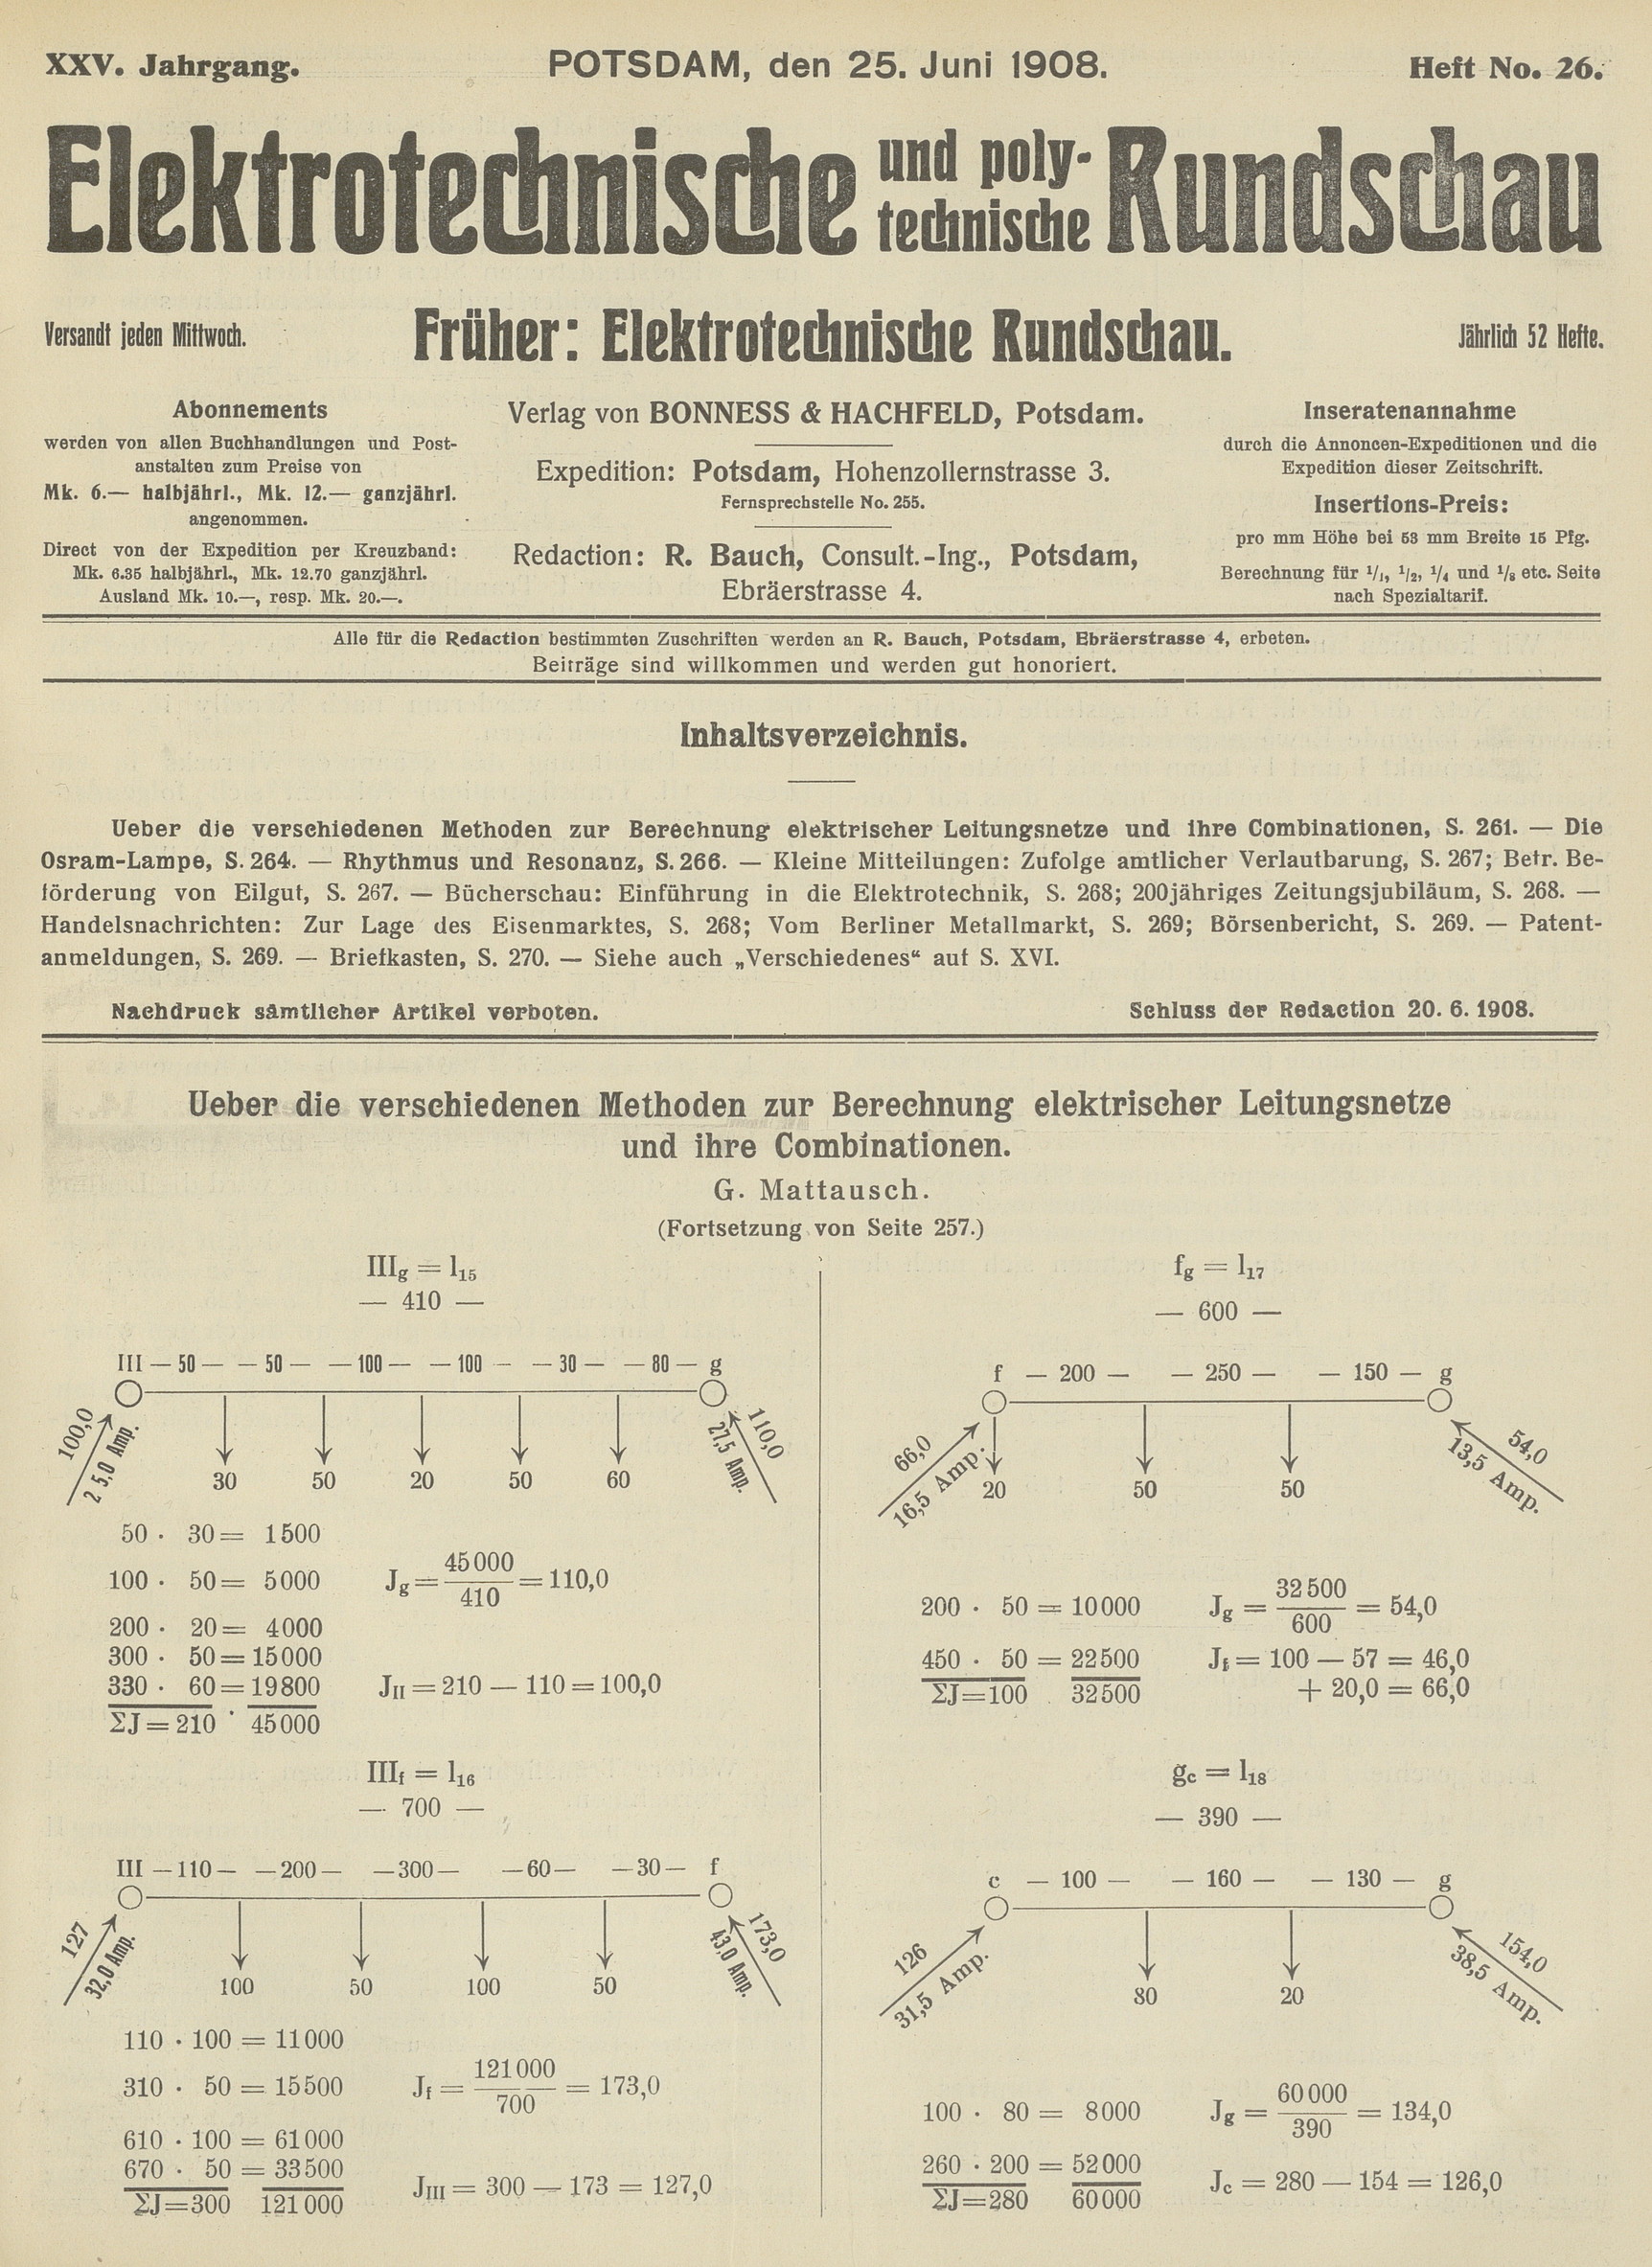 Elektrotechnische und polytechnische Rundschau, XXV. Jahrgang, Heft No. 26